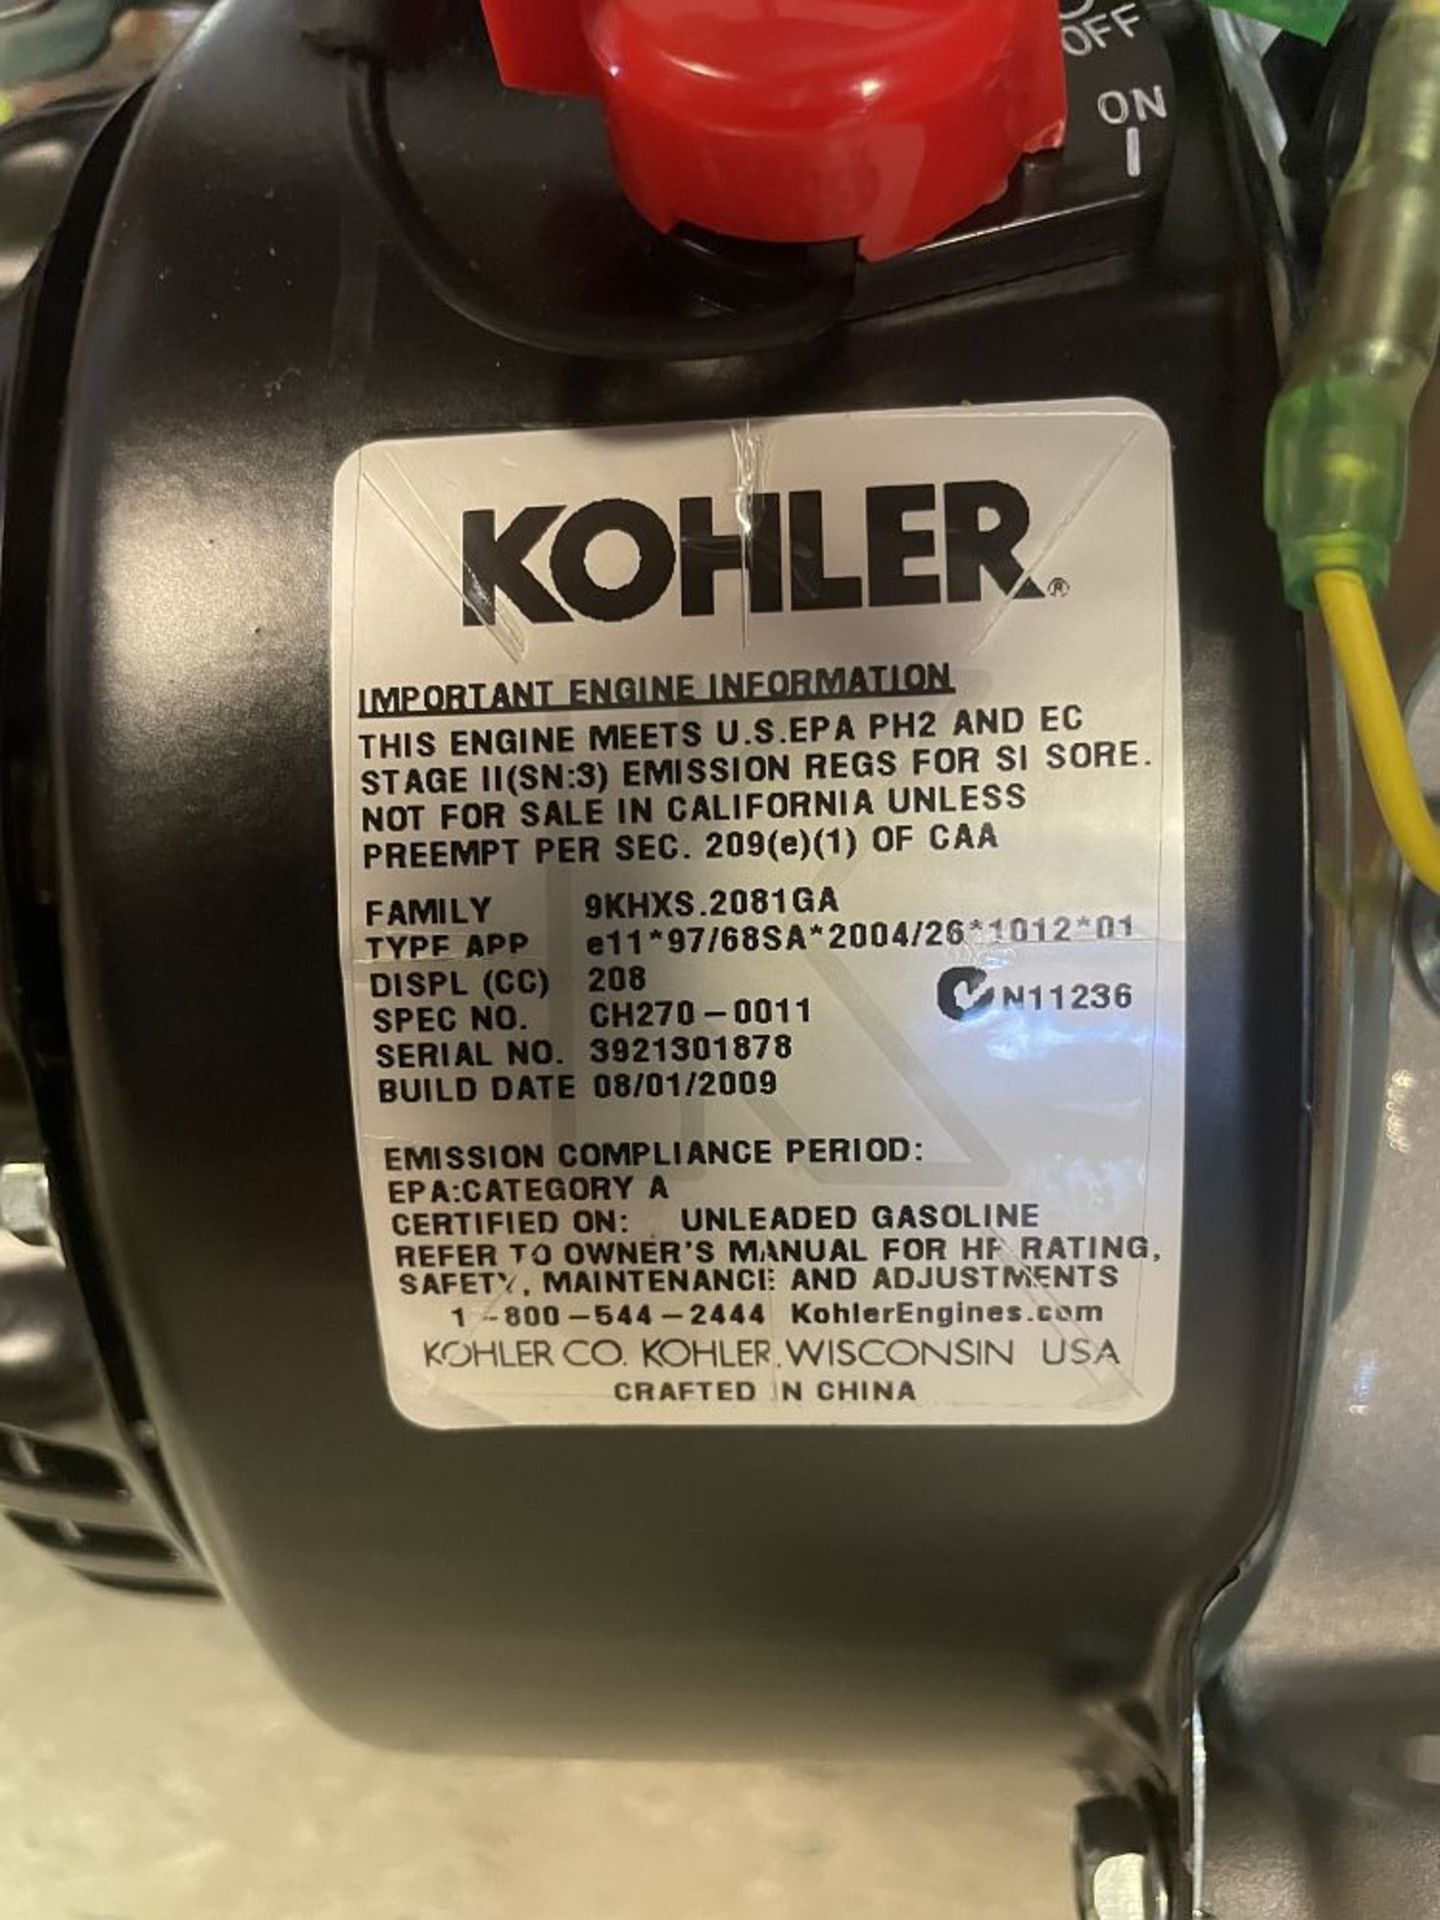 NEW Kohler Small Engine, Pro 7, 208 CC - Image 4 of 4